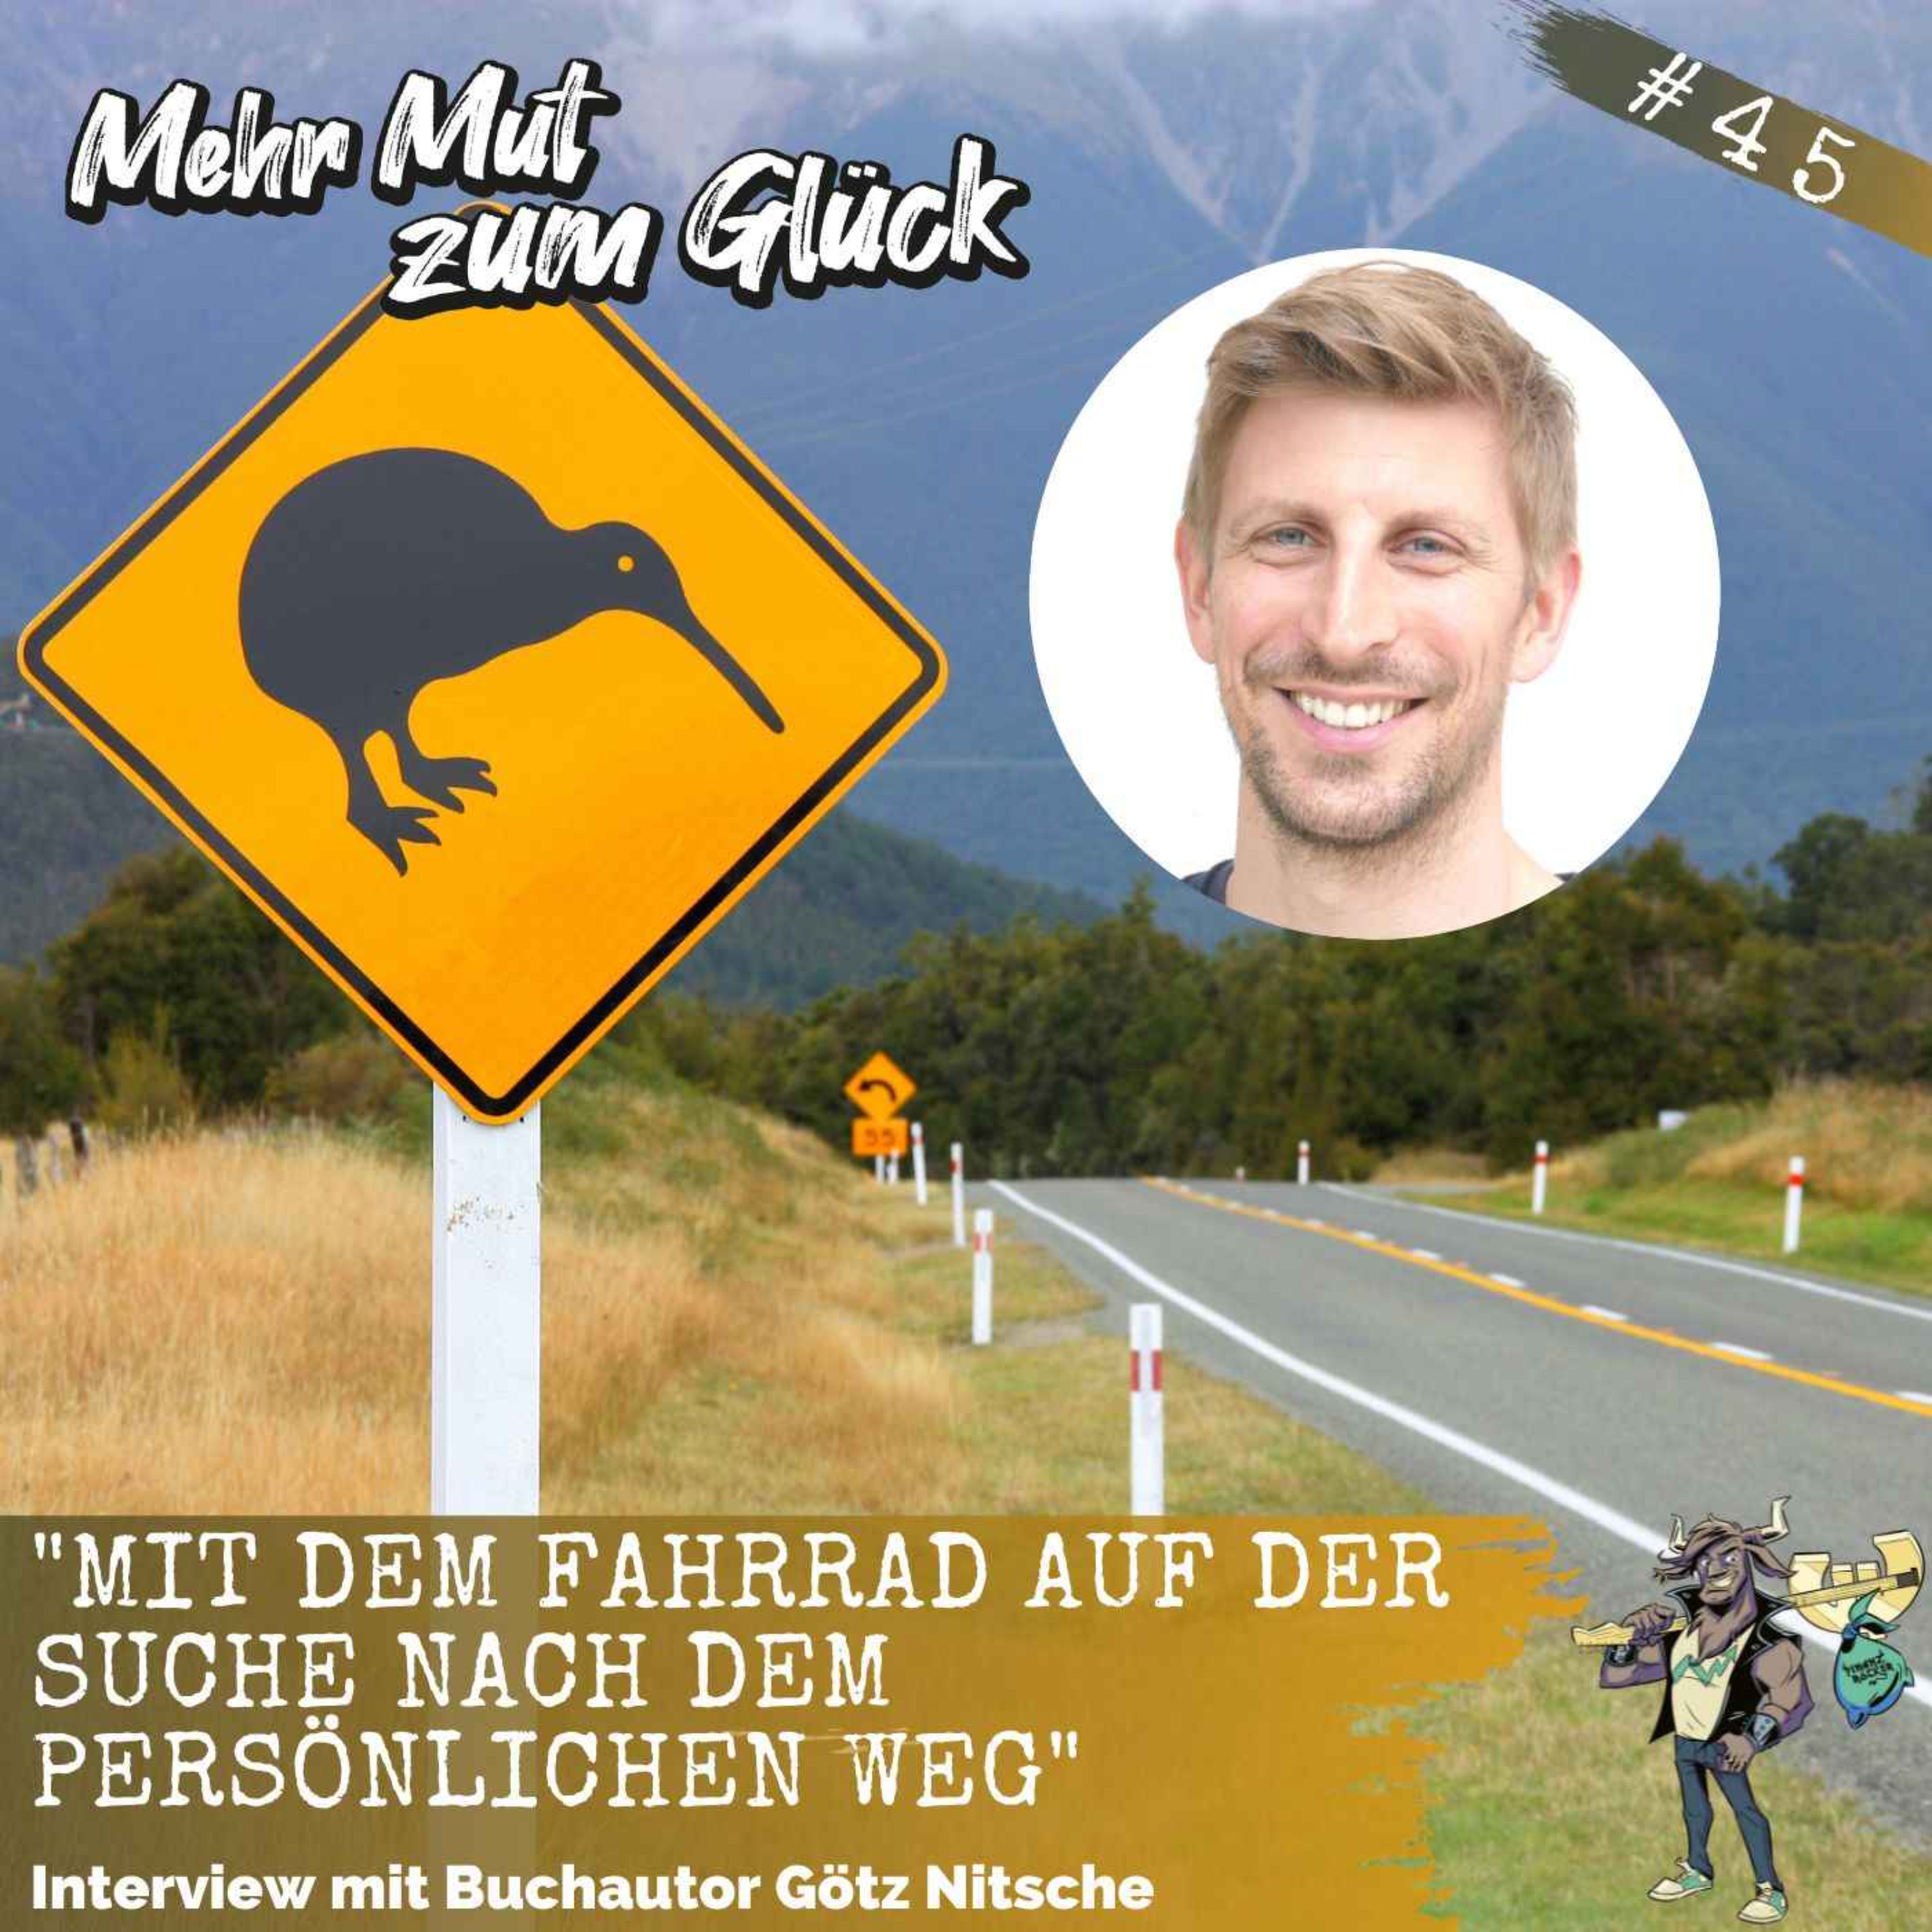 Folge 45: ”Mit dem Fahrrad auf der Suche nach dem persönlichen Weg” - Interview mit Götz Nitsche